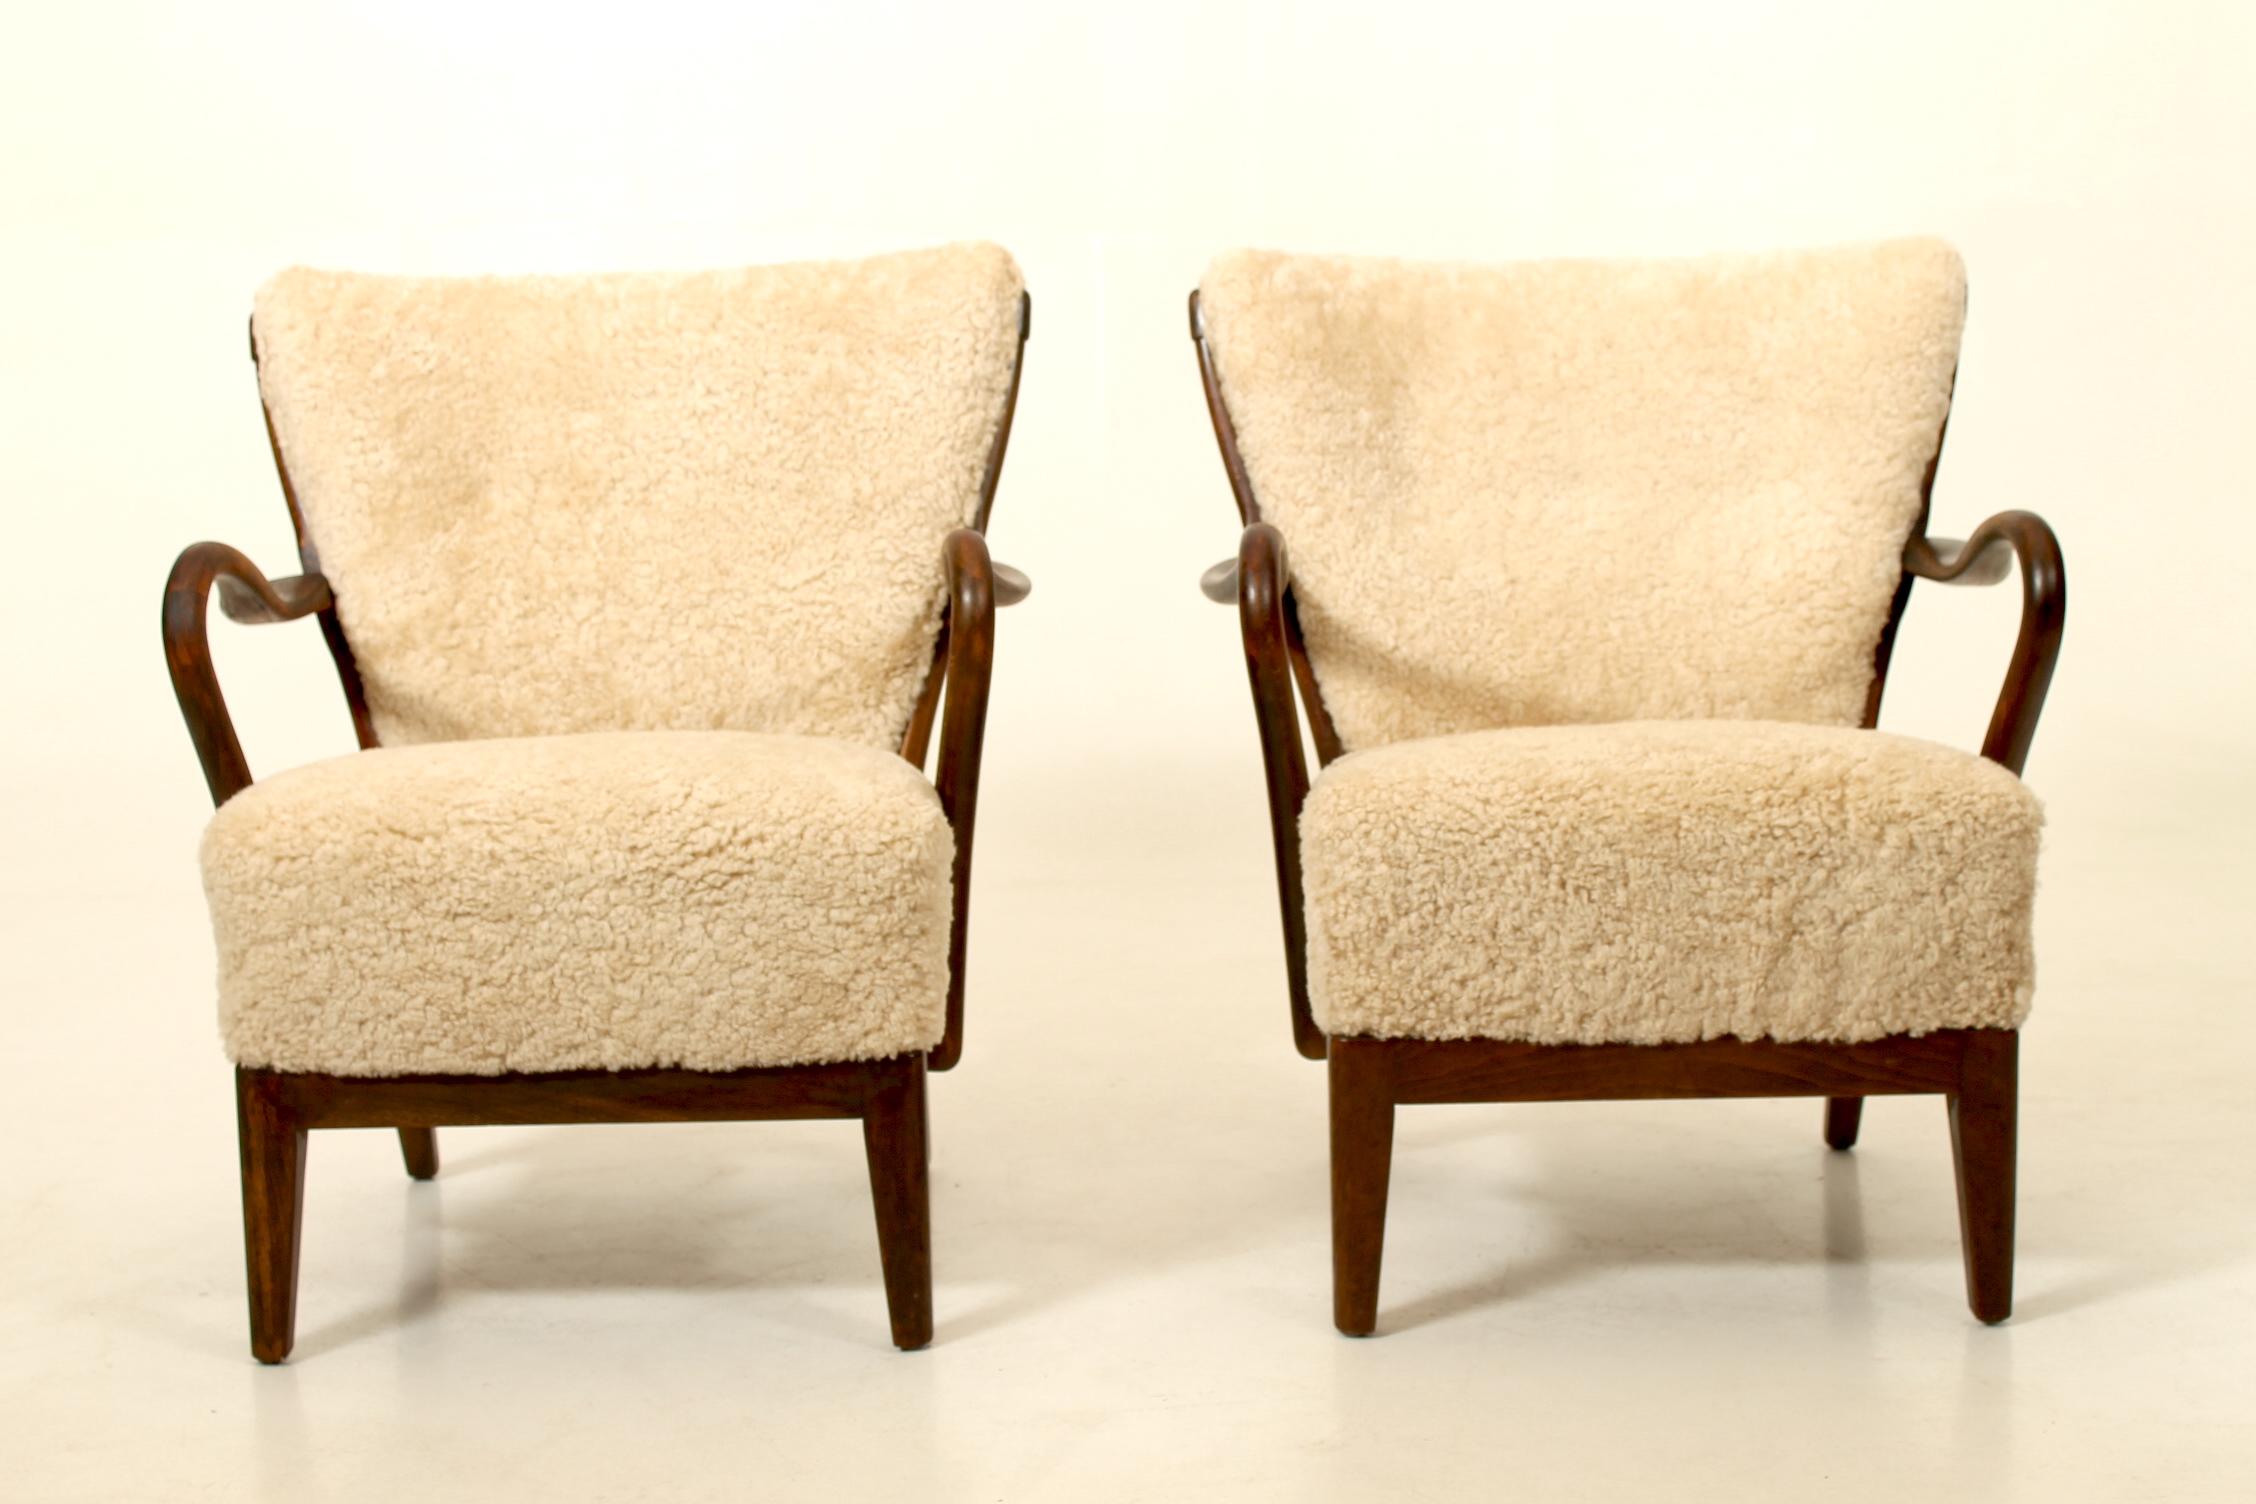 Zwei seltene Liegestühle, entworfen von Alfred Christensen in den 1940er Jahren und hergestellt von Slagelse Møbelværk. Restauriert mit neuem Schafsleder. 

